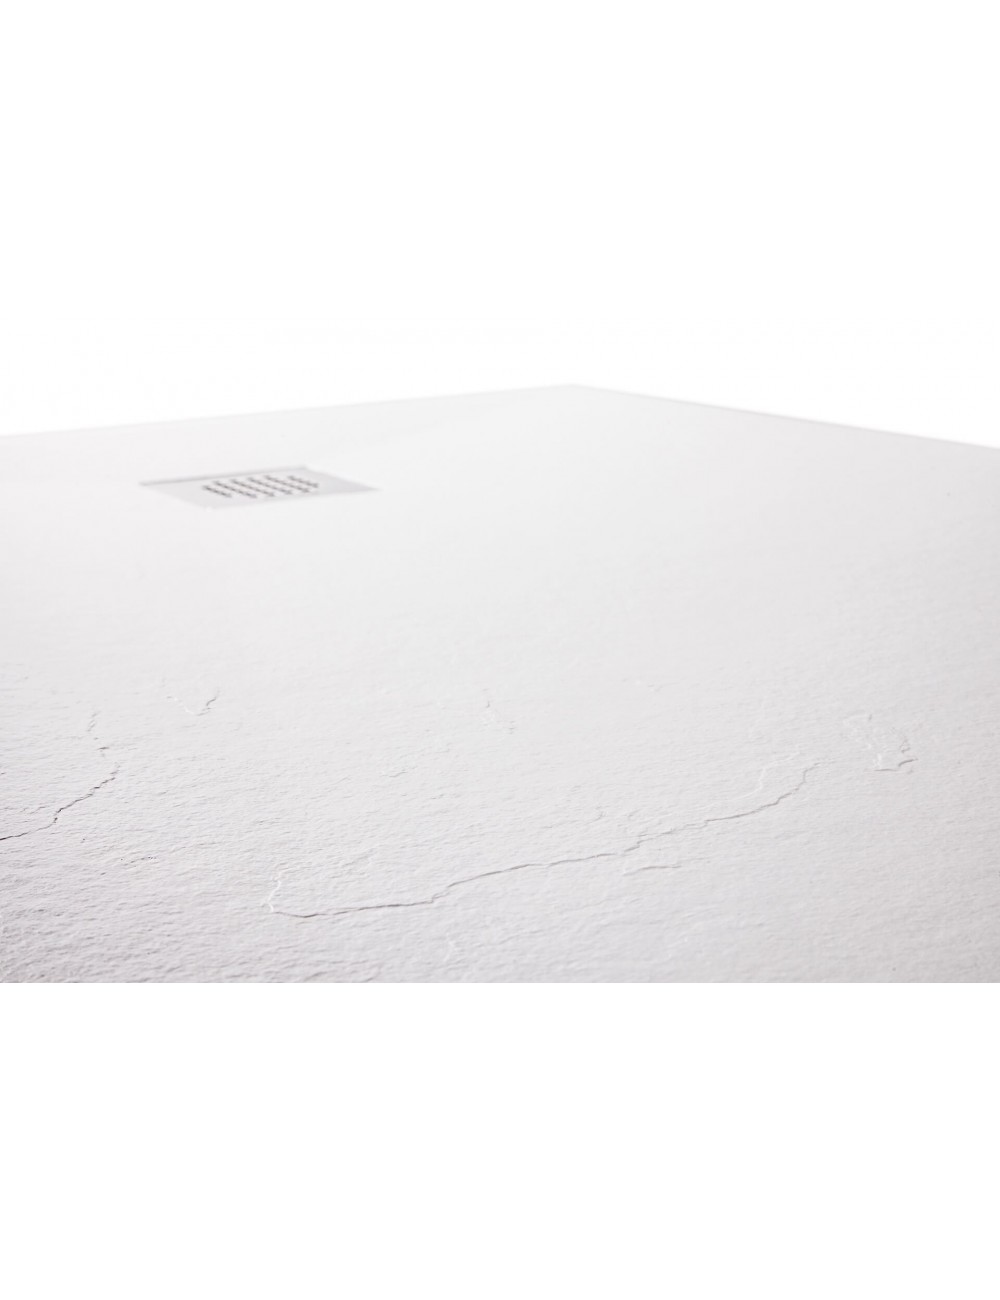 Piatto doccia effetto pietra in Restone bianco H2,5 70x90